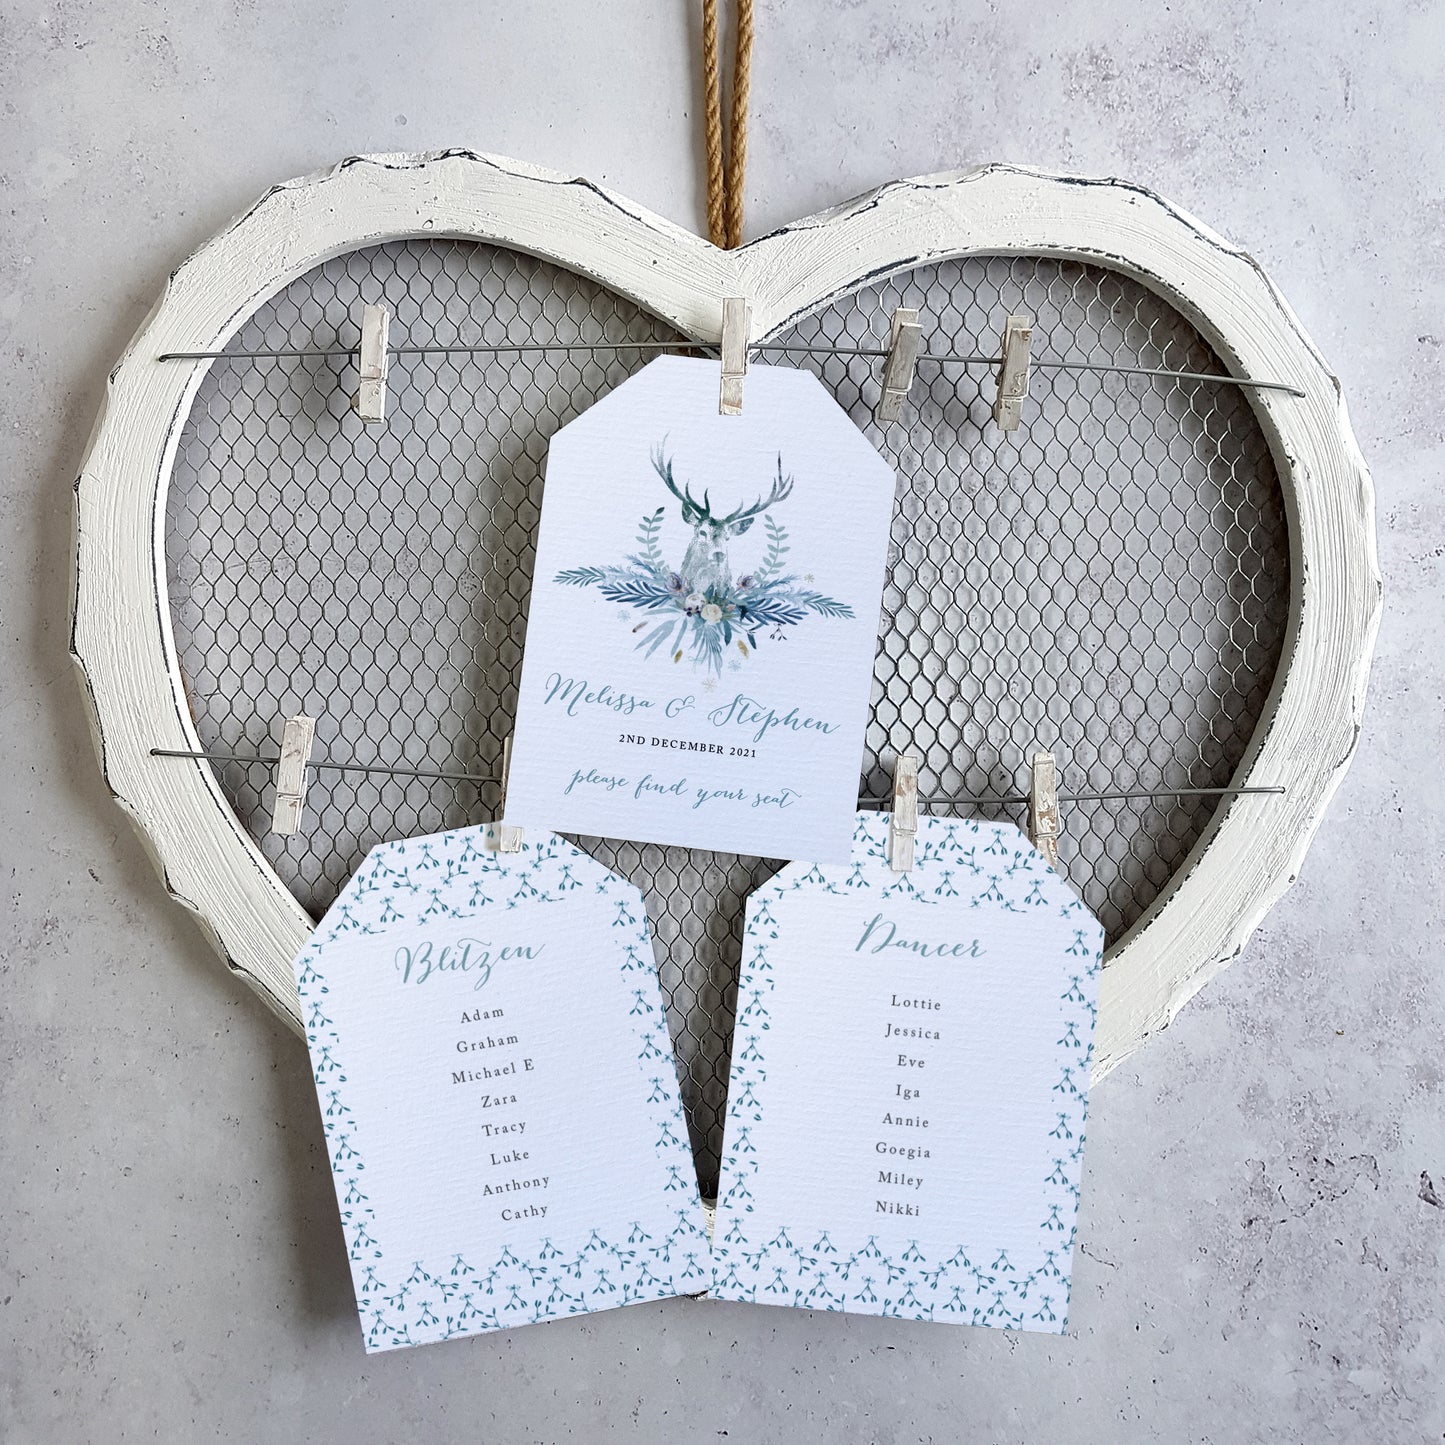 'Highland Winter' wedding seating plan cards